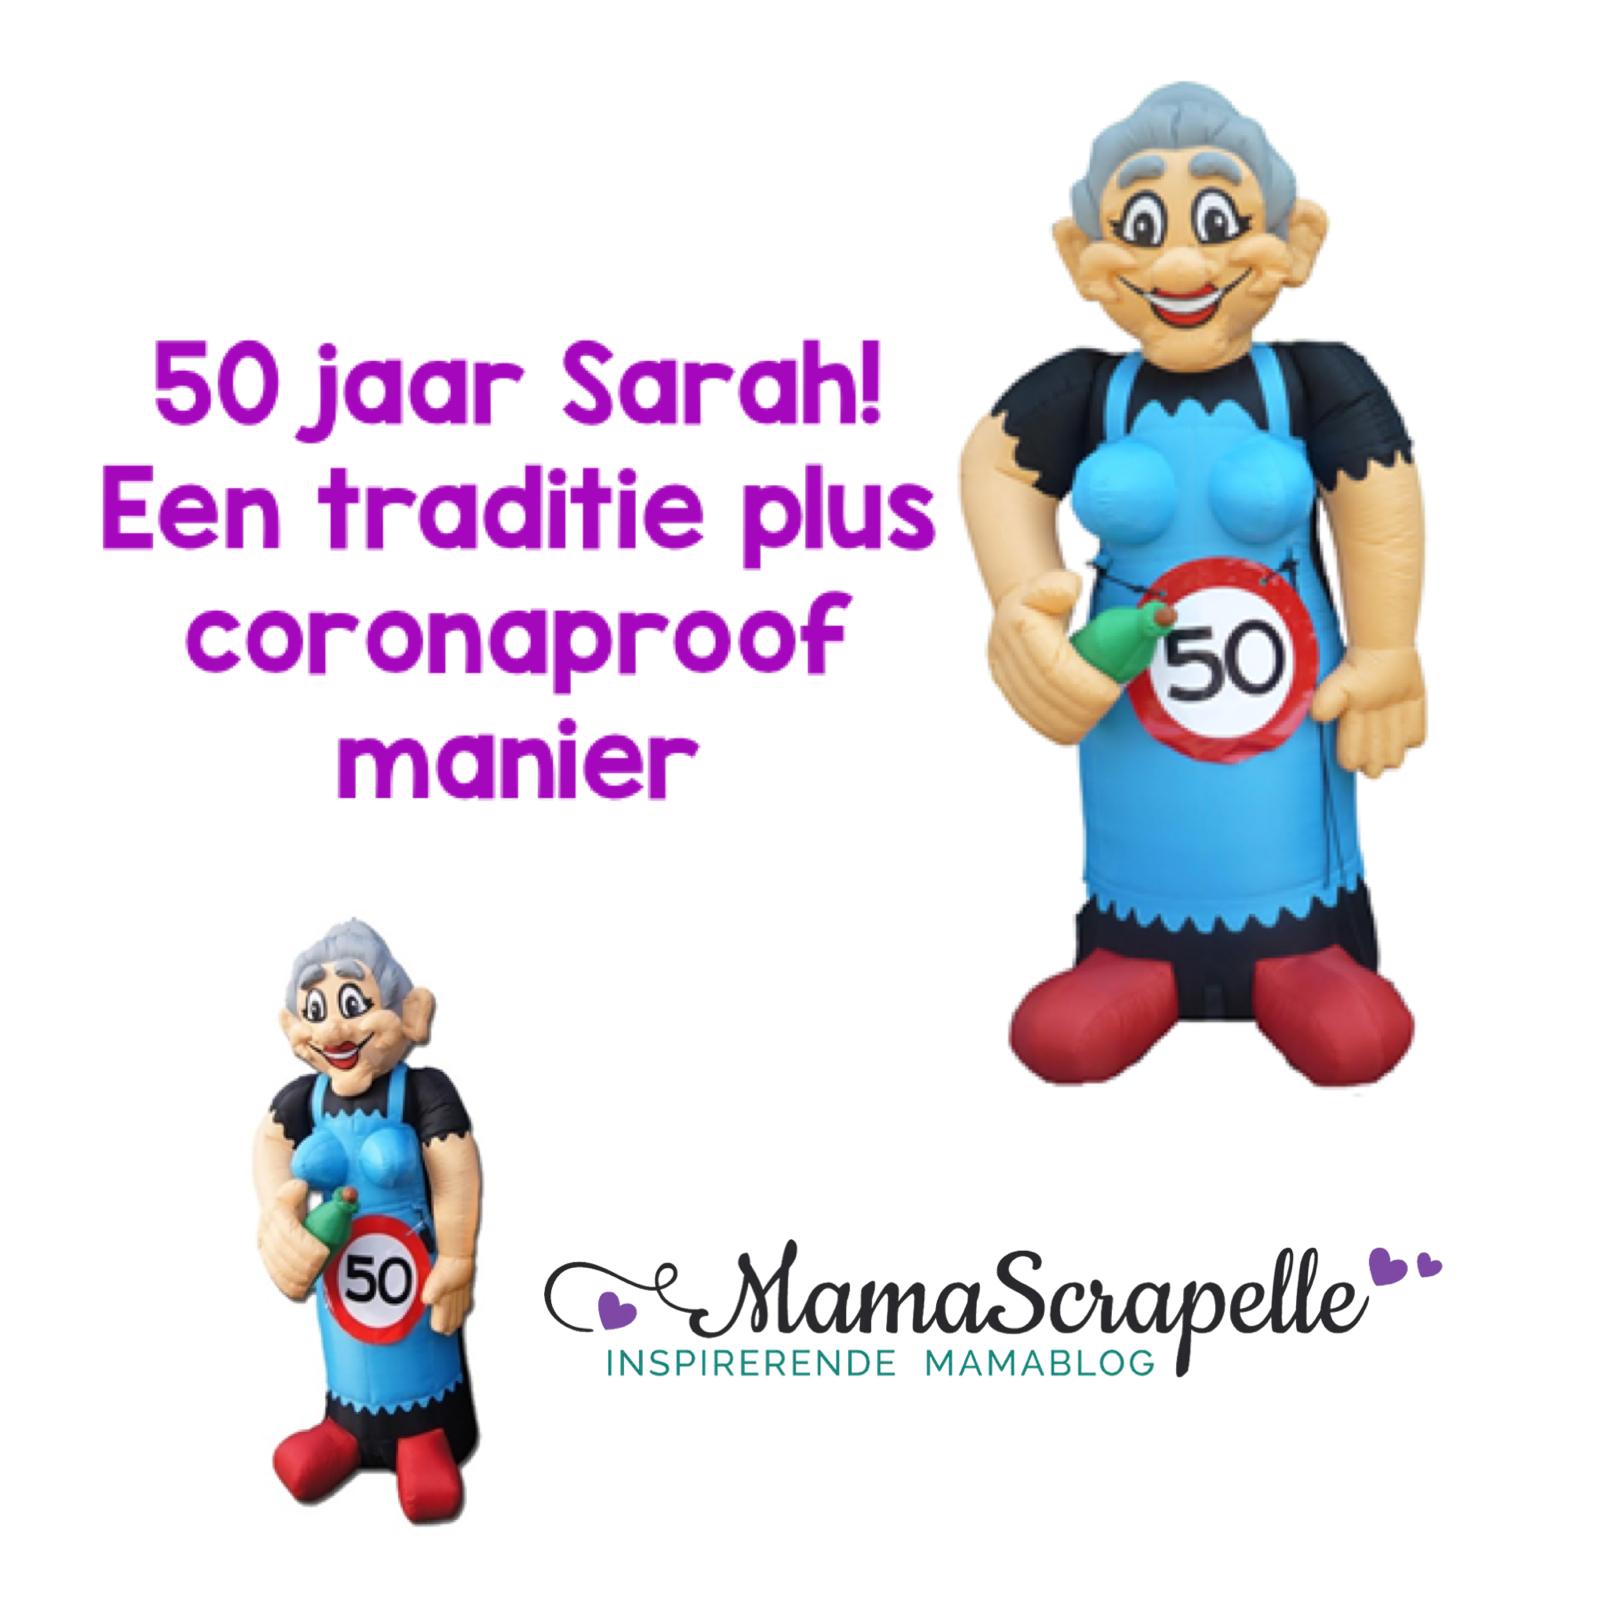 50 jaar Sarah! Een traditie plus coronaproof - Mamascrapelle